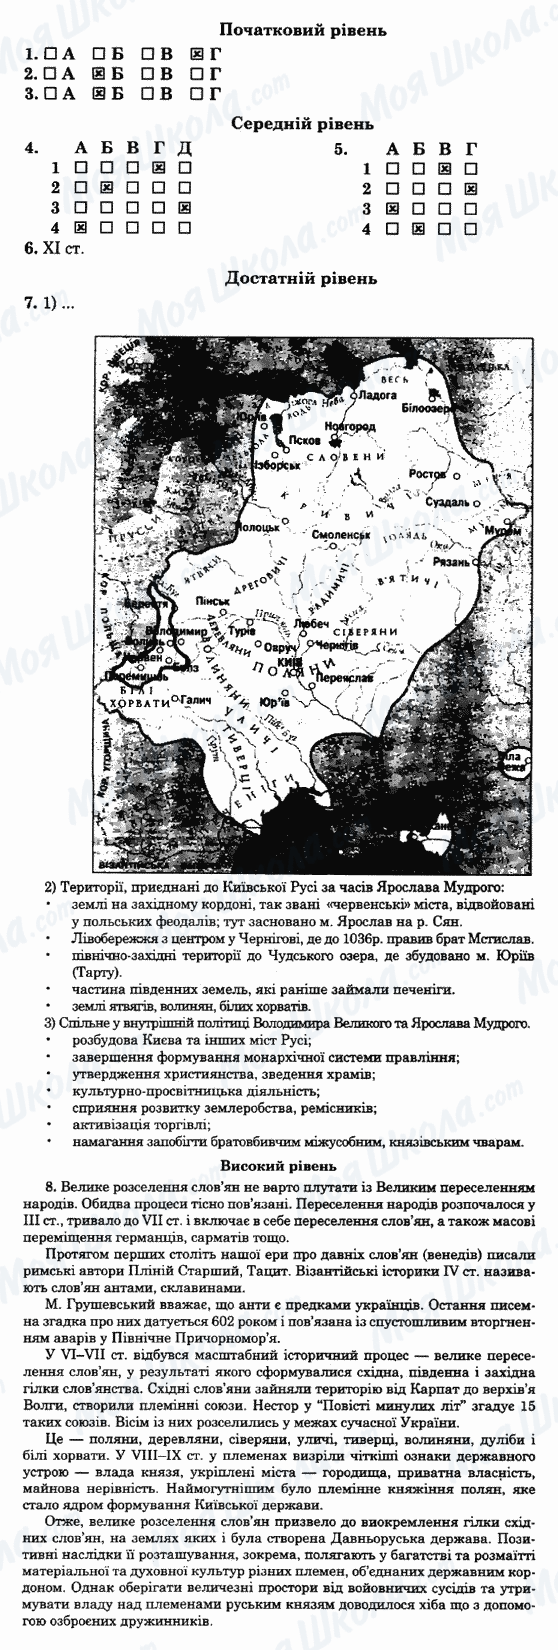 ГДЗ Історія України 7 клас сторінка 29-варіант